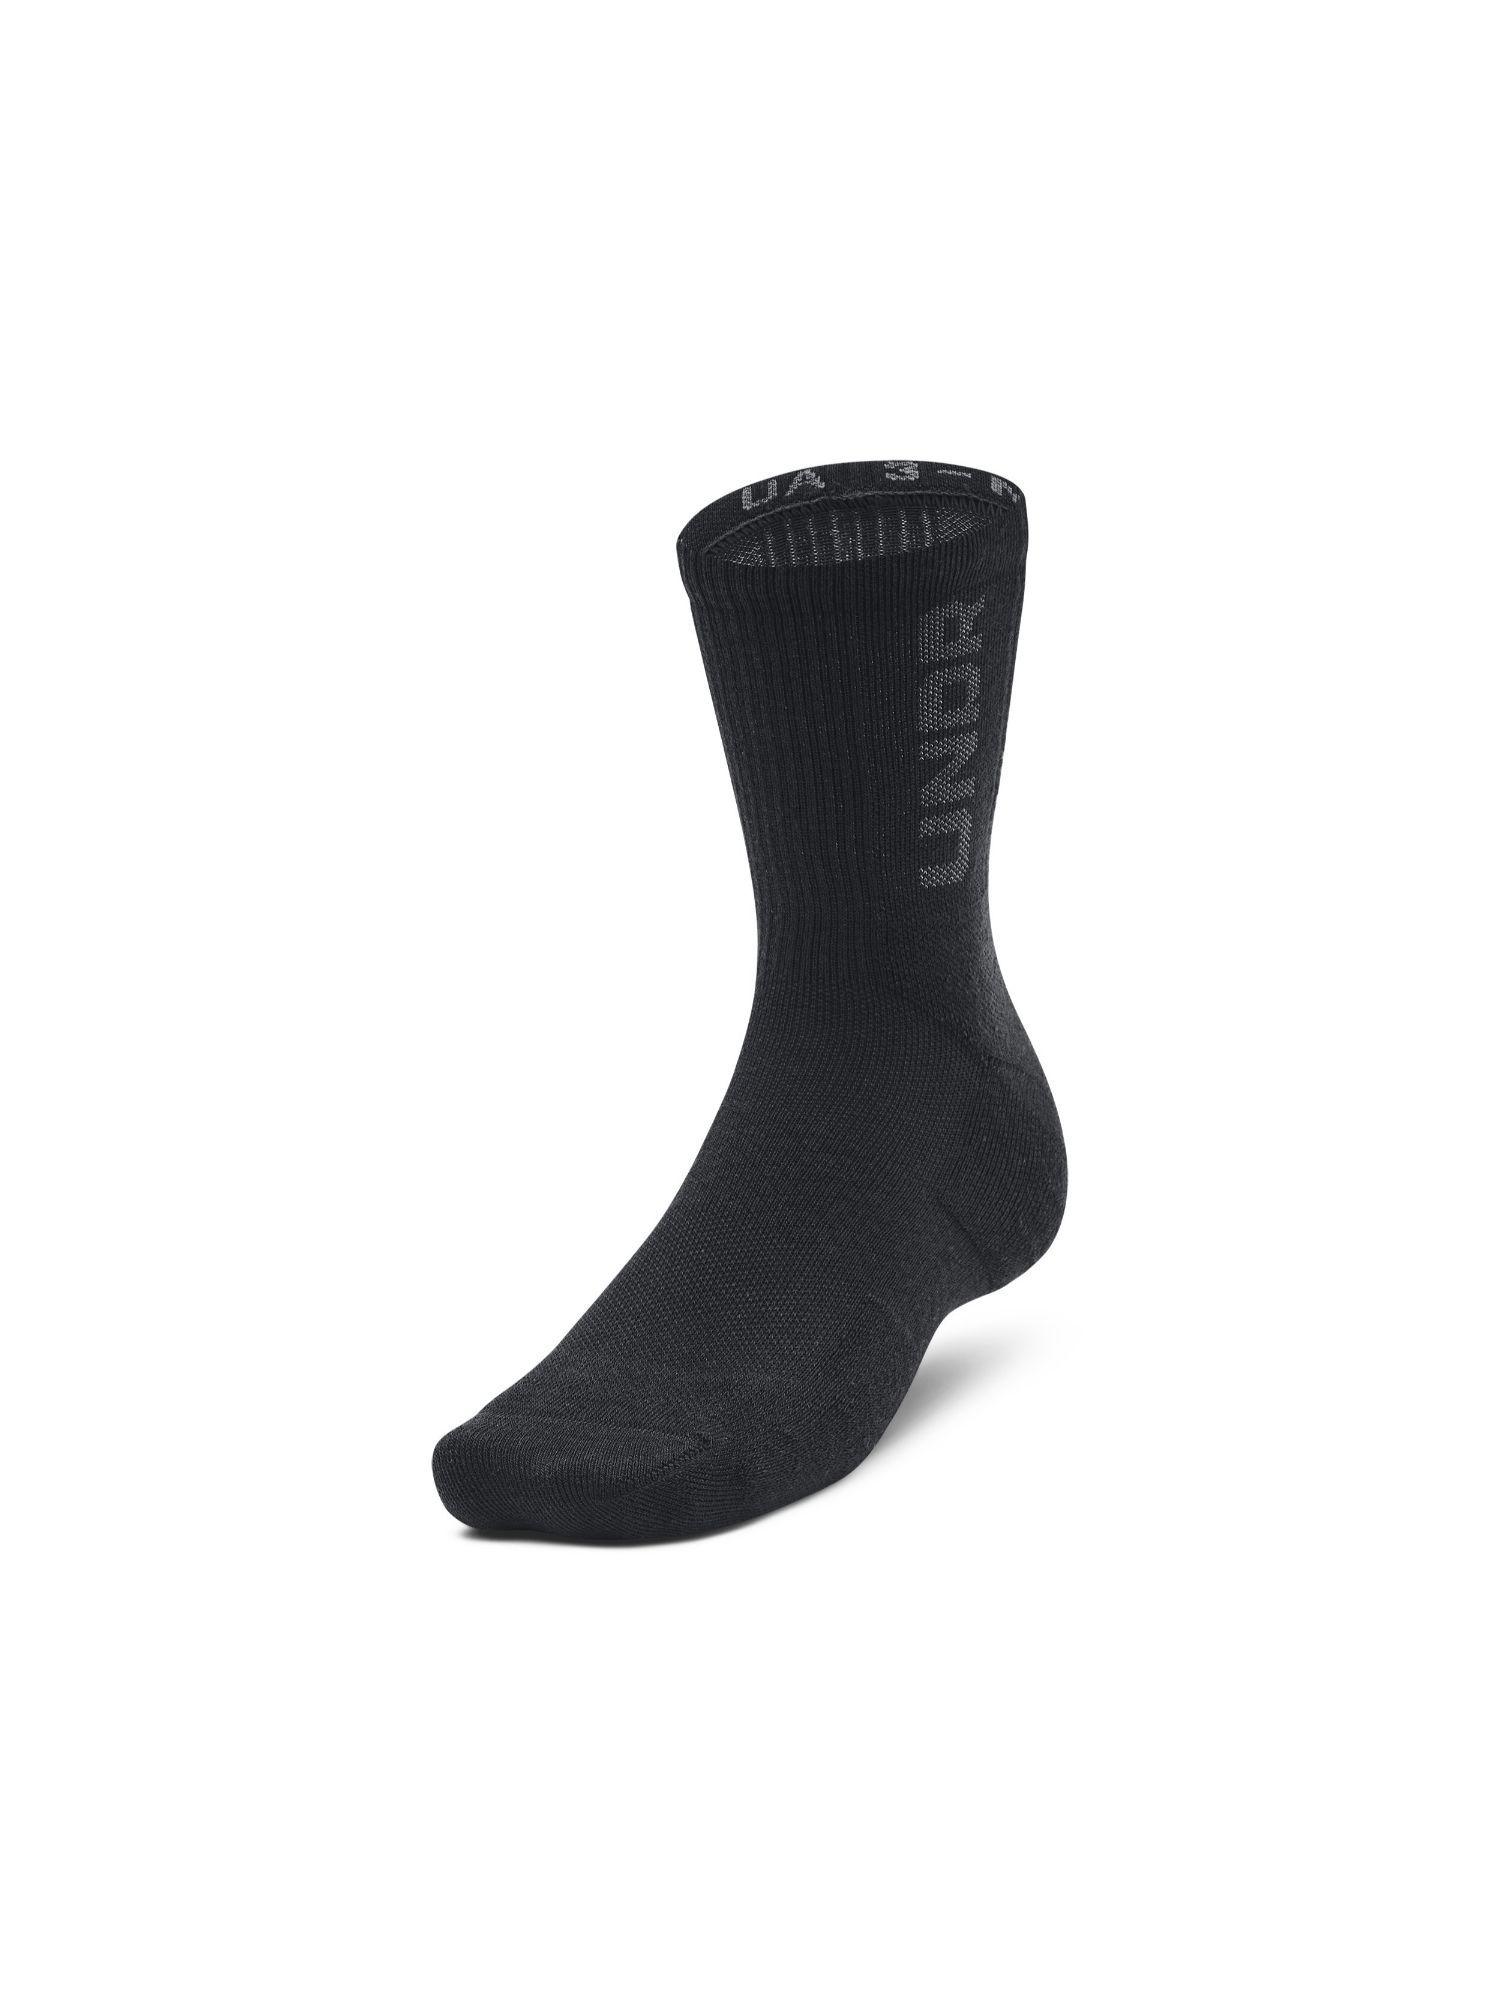 unisex maker mid crew socks - black (pack of 3)